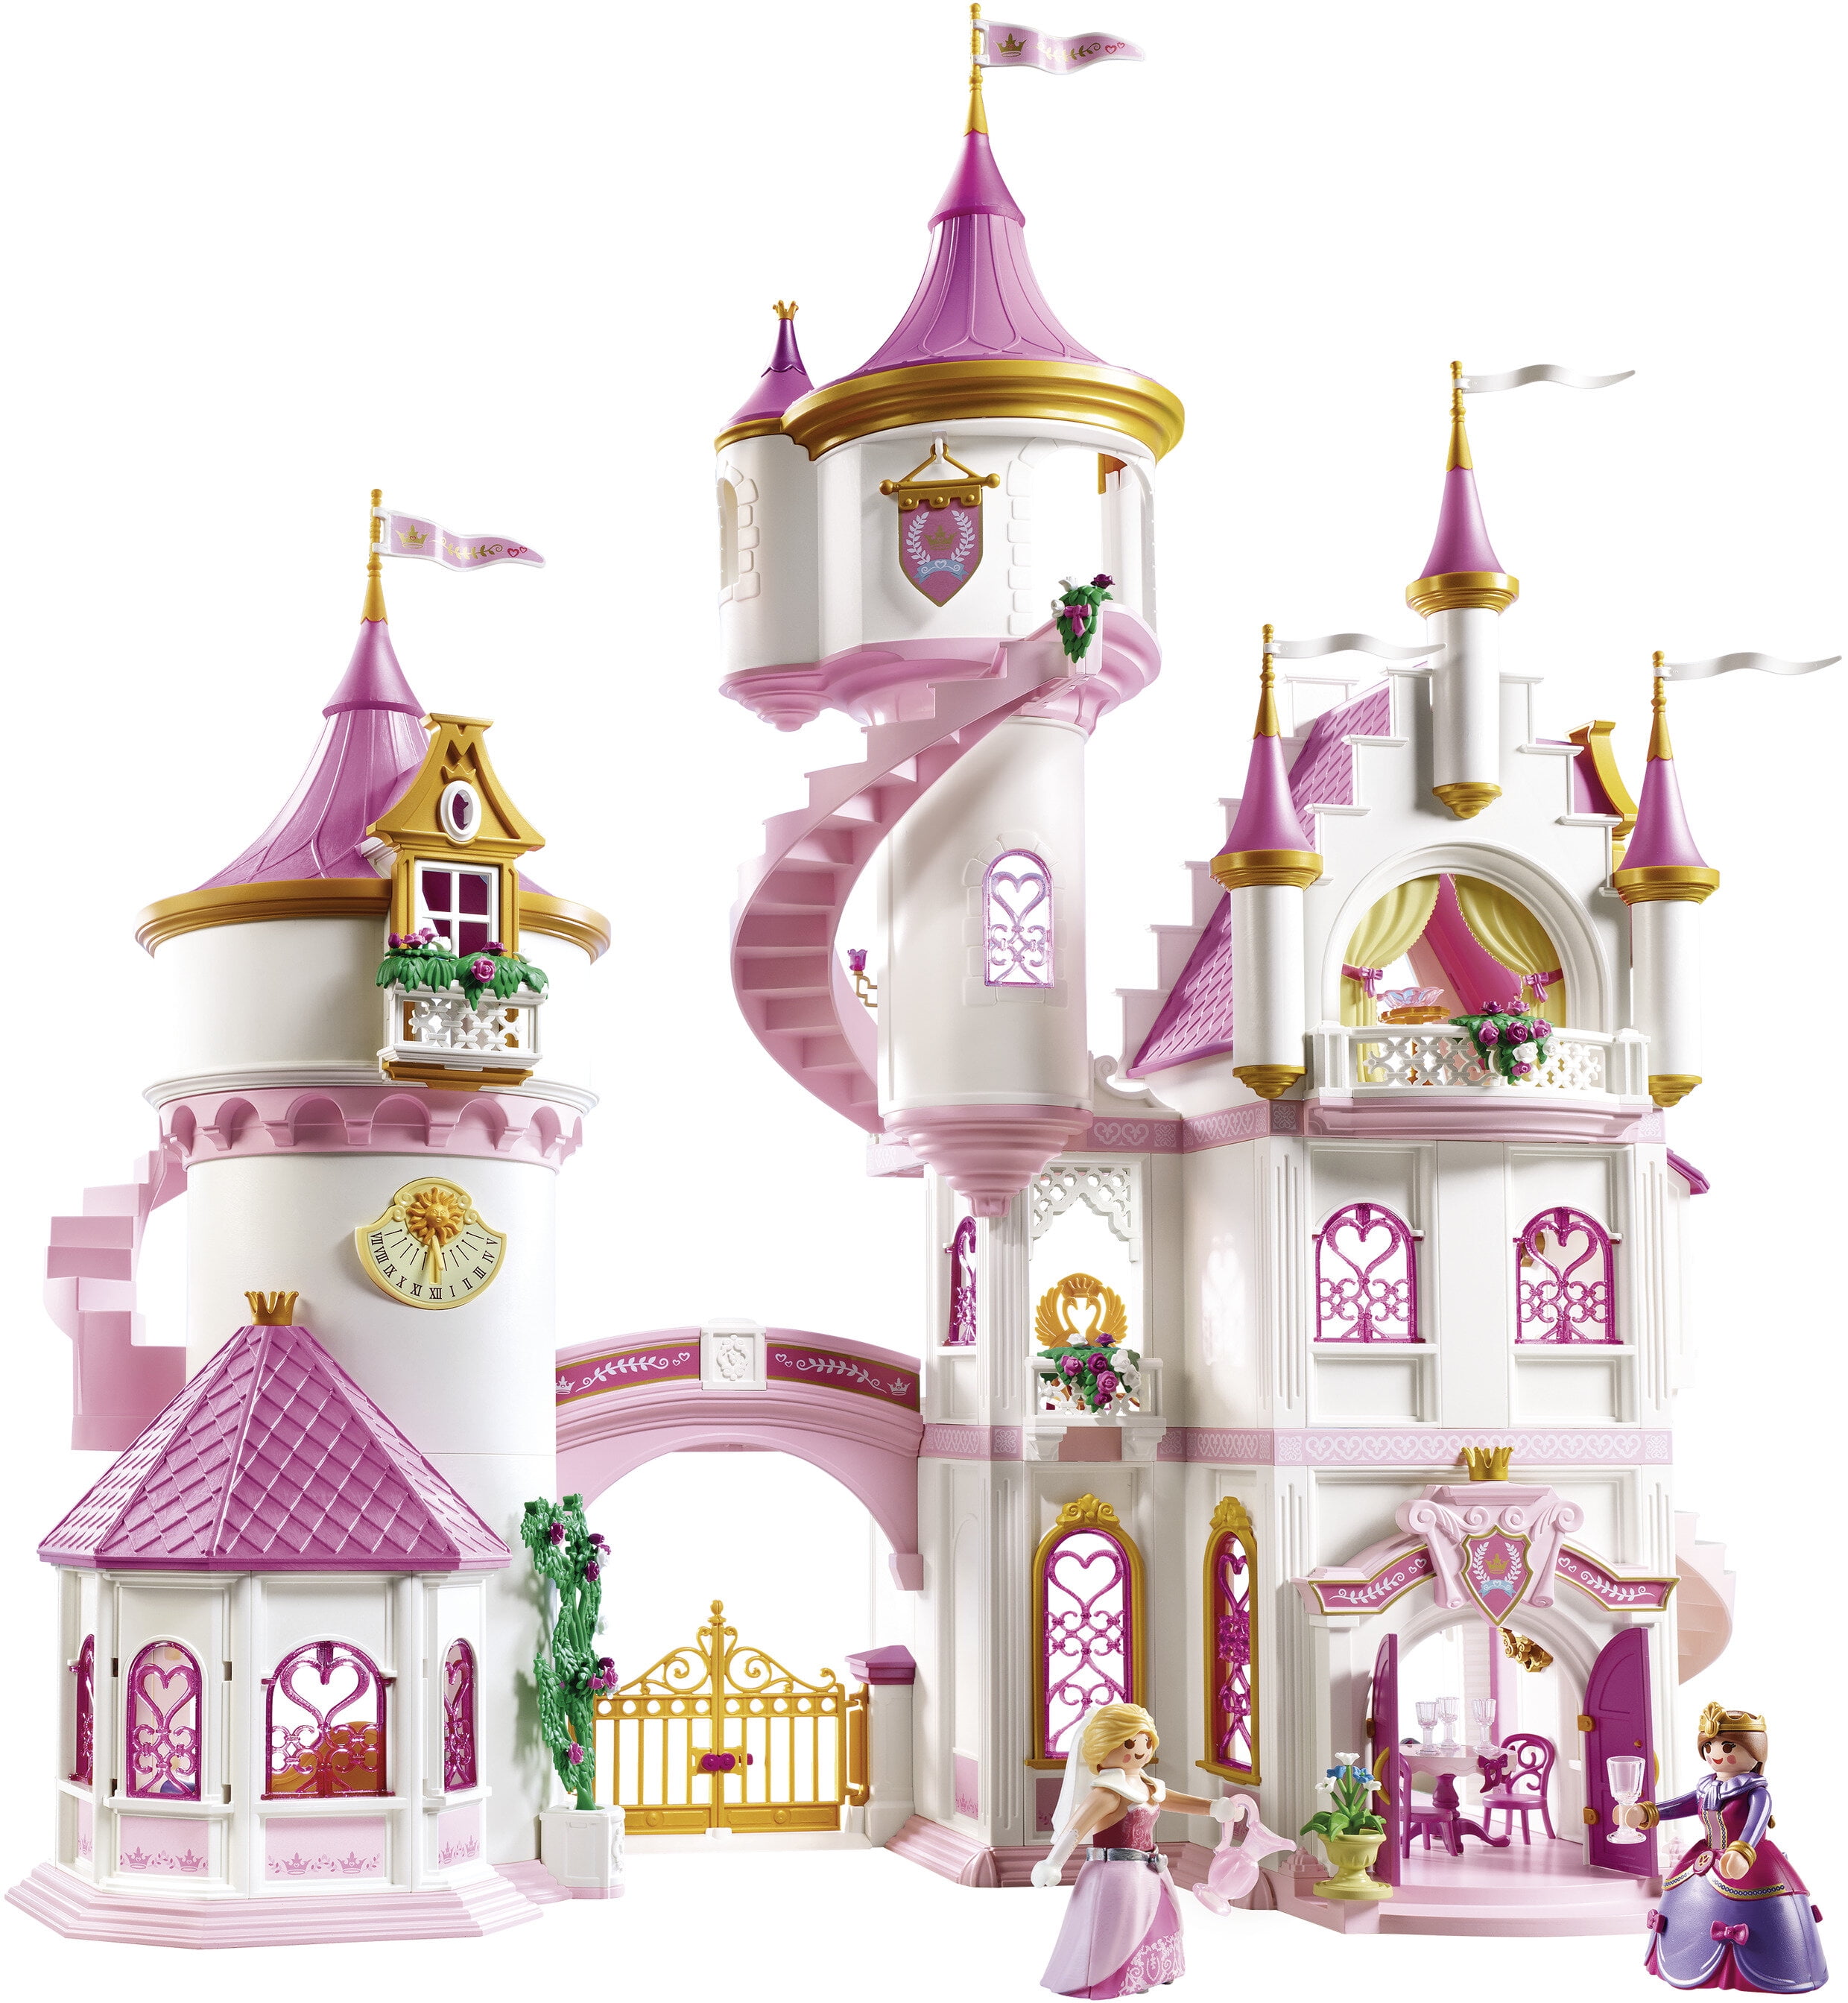 Playmobil princess palace 5142 replacement part